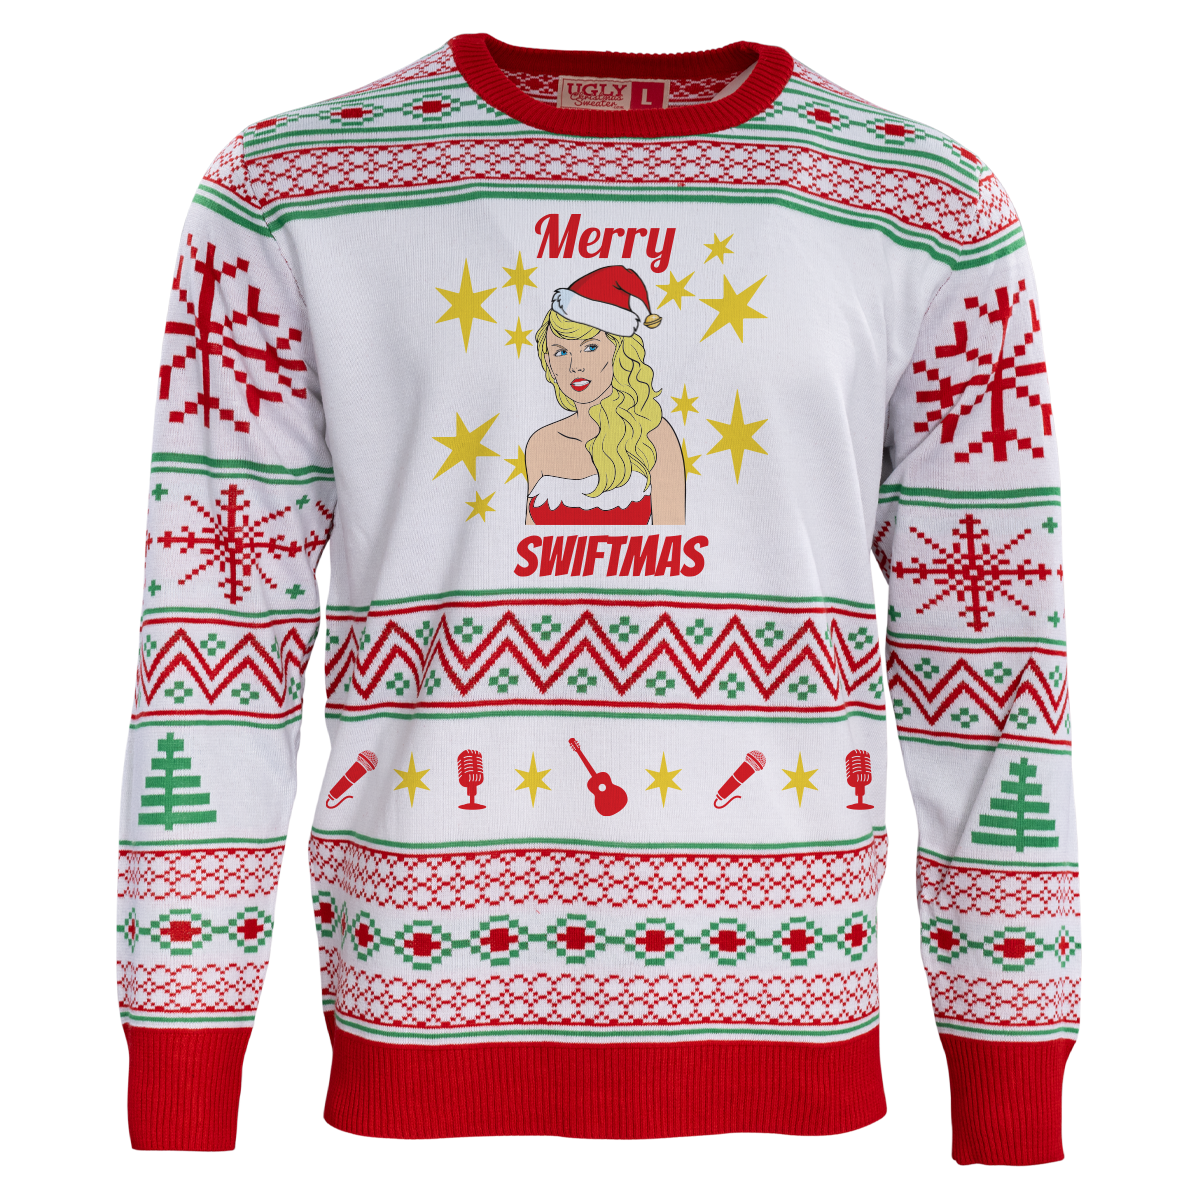 Merry Swiftmas Ugly Christmas Sweater